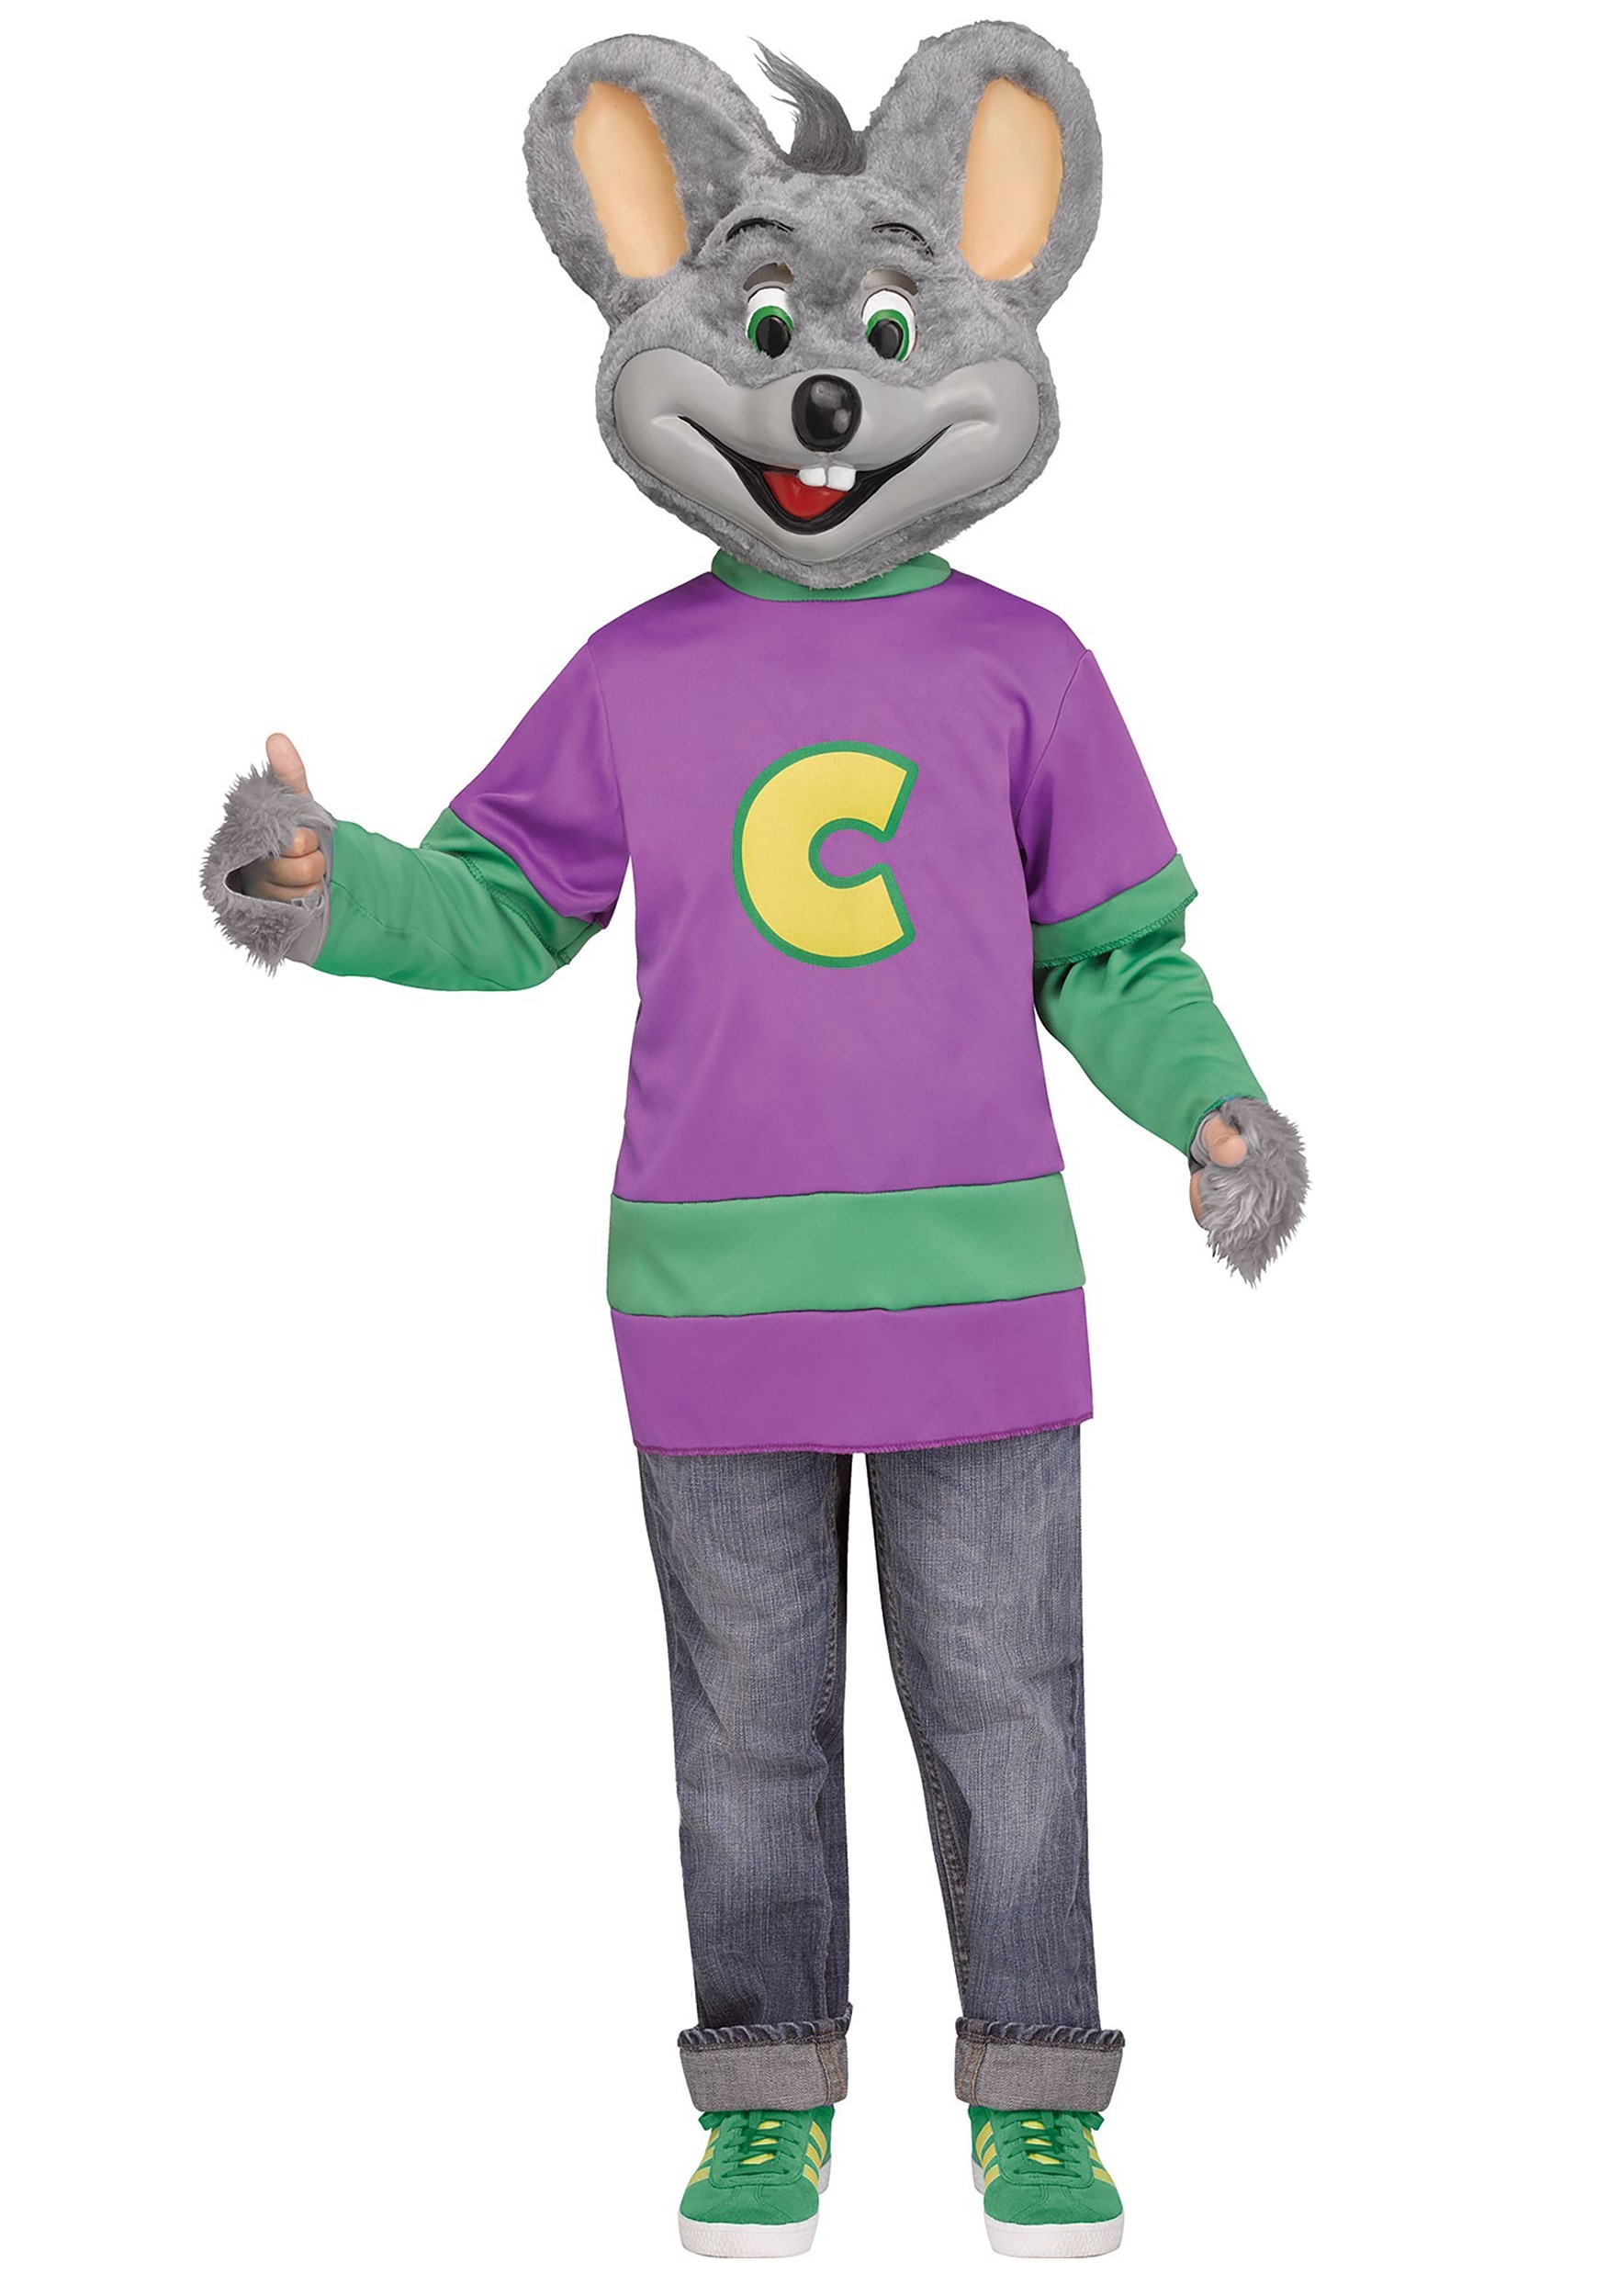 Chuck E Cheese Costume Head For Sale